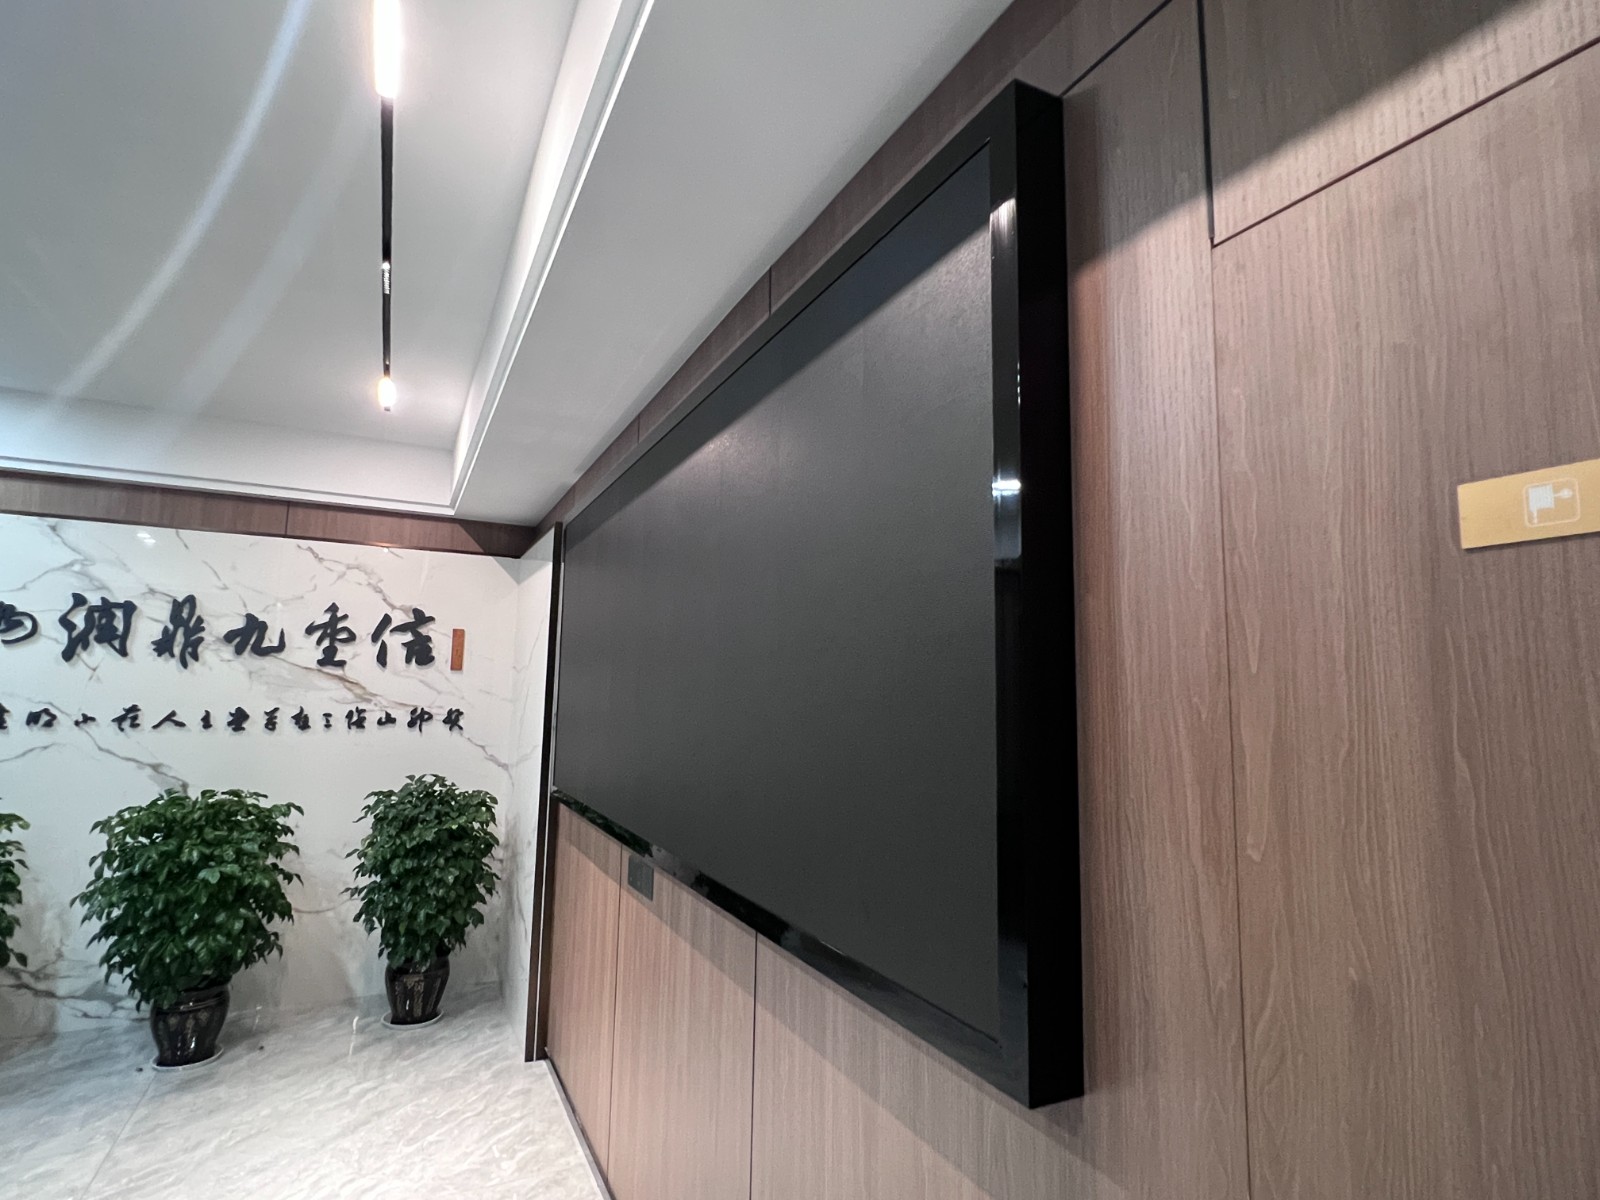 浙江省绍兴市某包装公司项目P2.5 LED全彩显示屏案例图片5